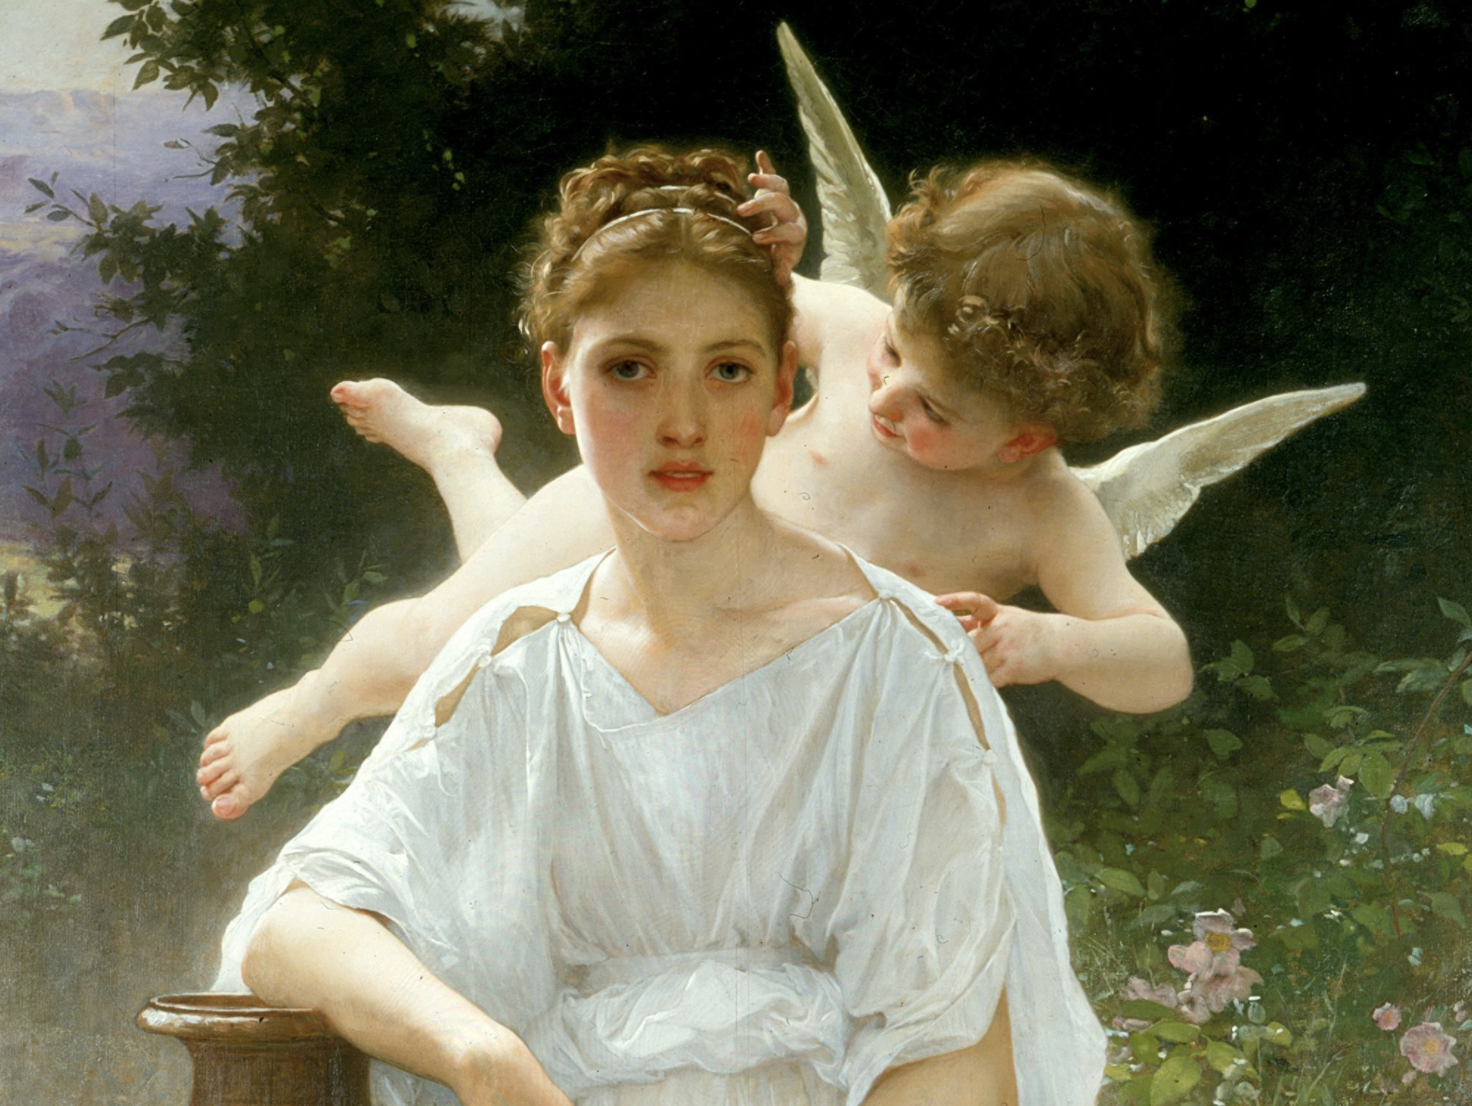 Les Murmures de l'Amour (1889) by William-Adolphe Bouguereau - Public Domain Catholic Painting